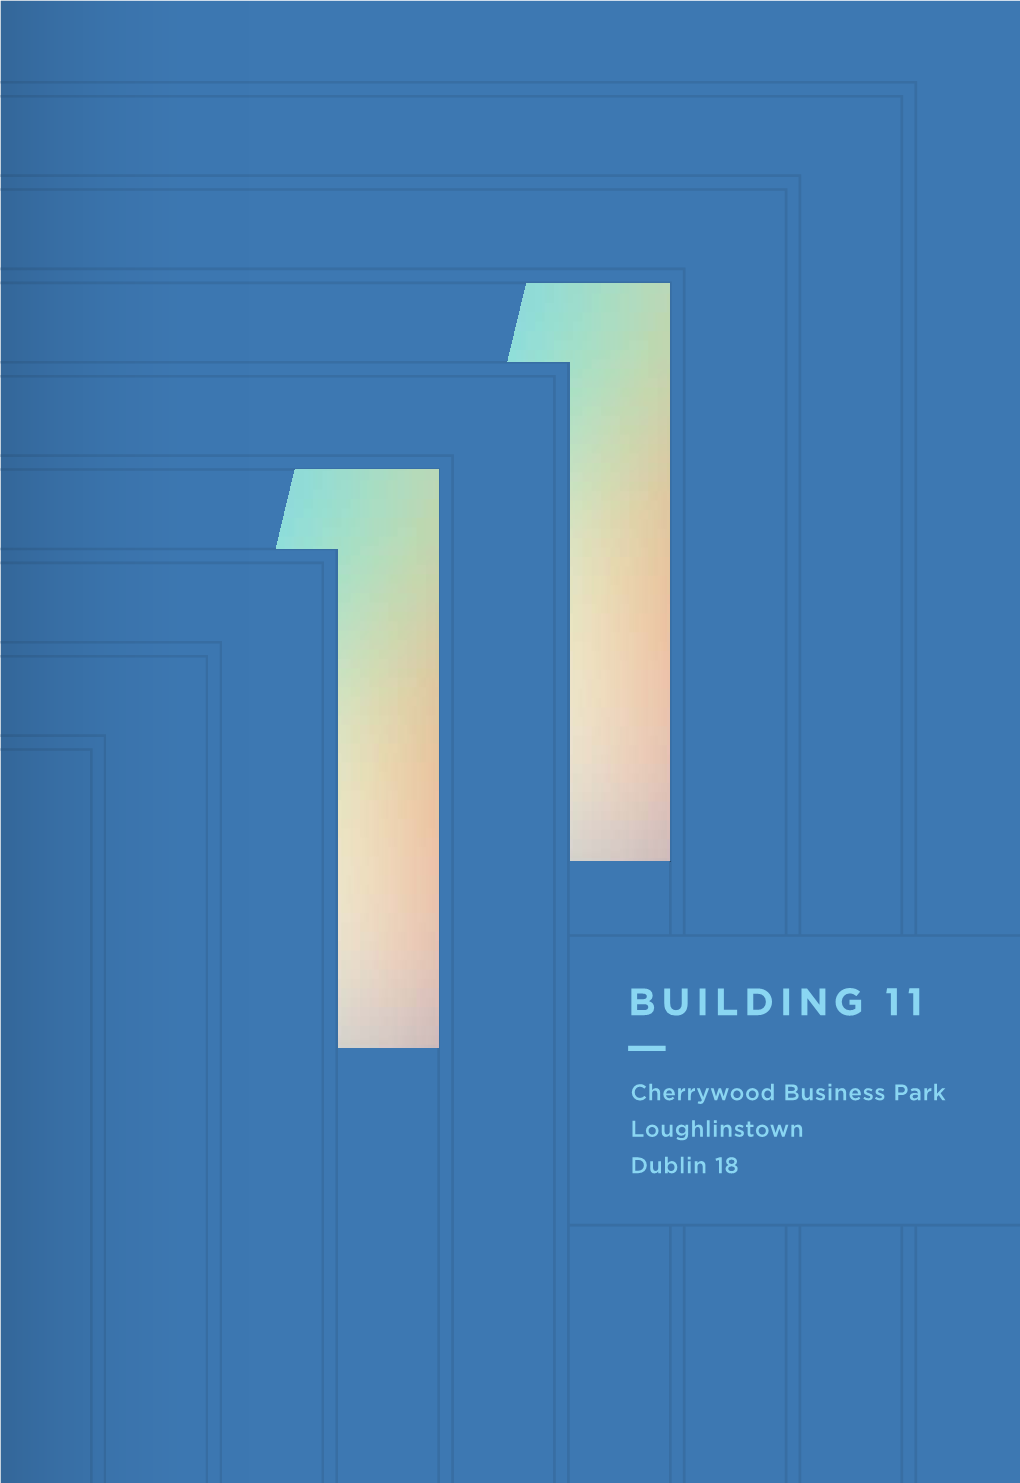 Building 11 — Cherrywood Business Park, Dublin 18